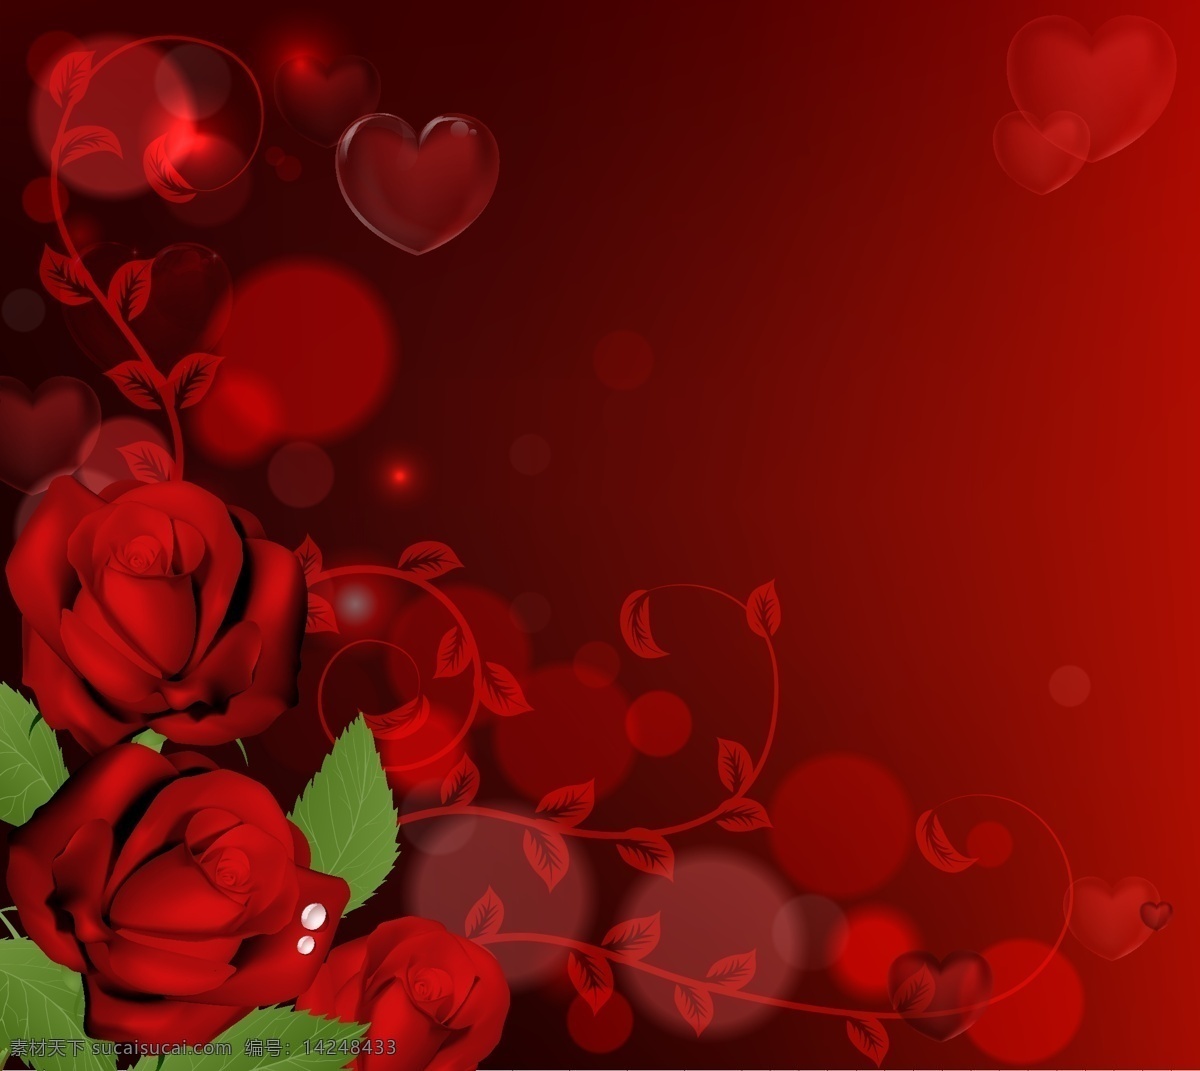 玫瑰花 背景 矢量 红玫瑰 玫瑰素材 格式 矢量图 高清图片